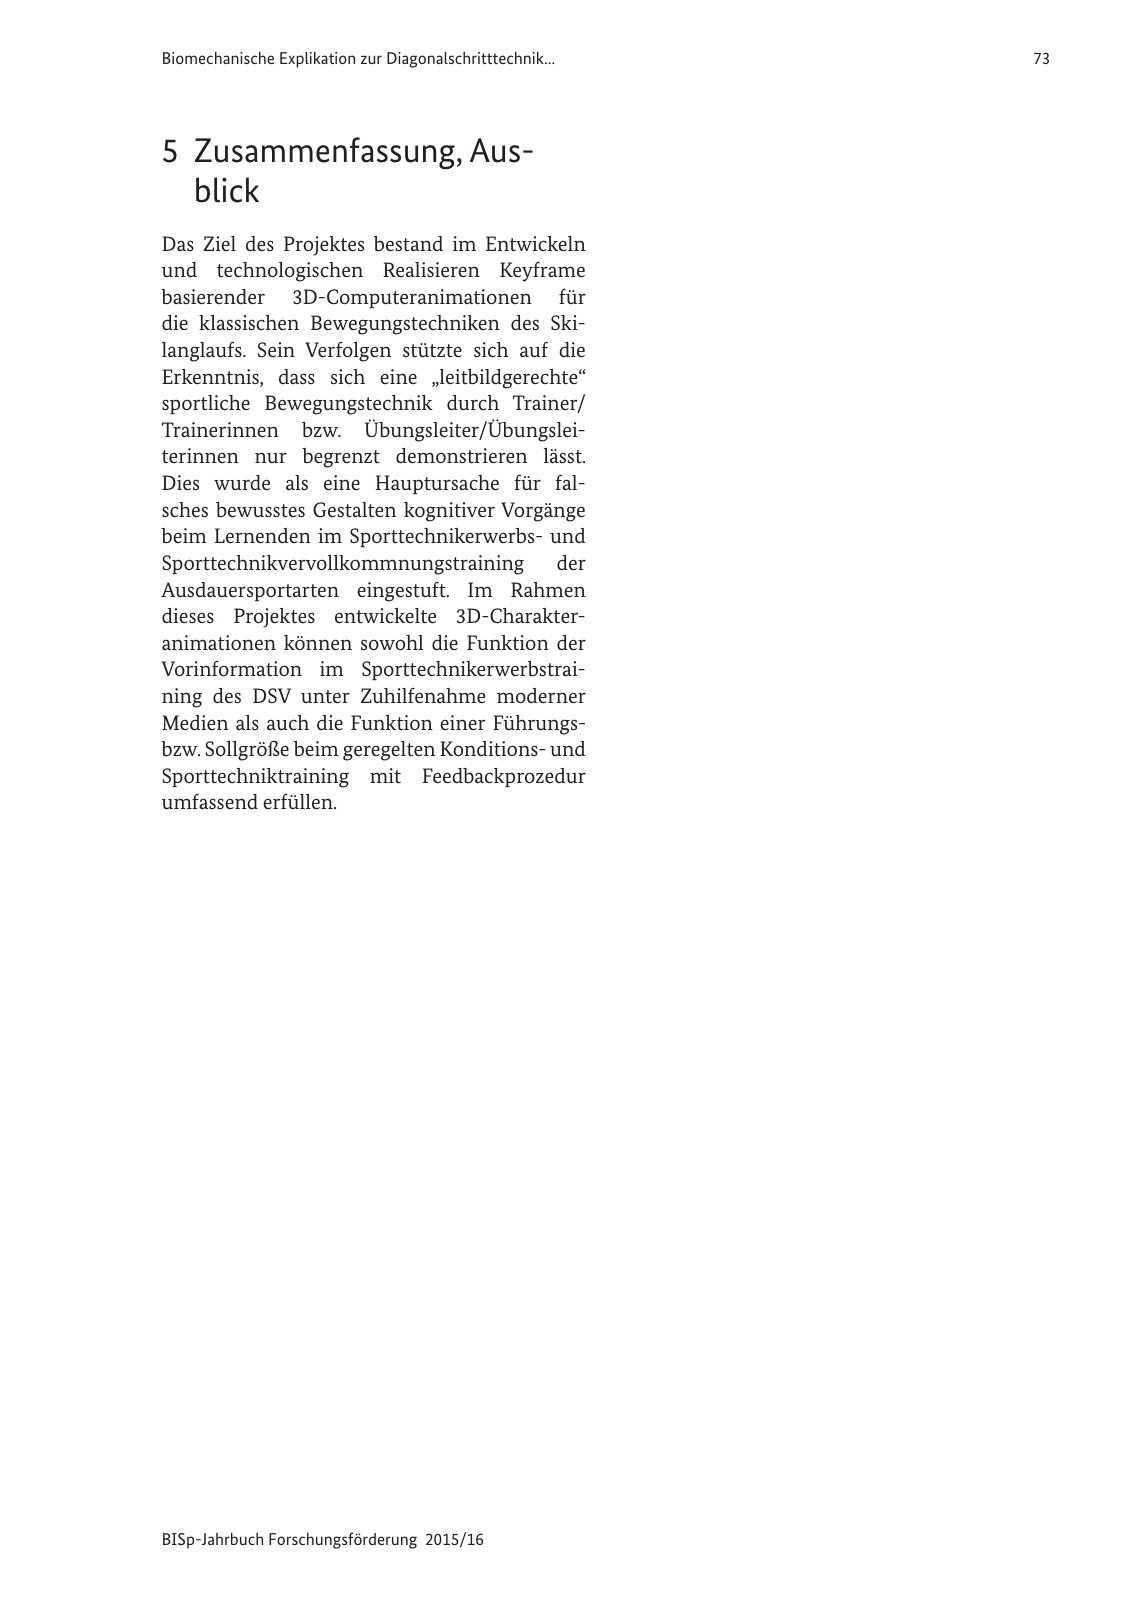 Vorschau BISp-Jahrbuch Forschungsförderung 2015/16 Seite 75